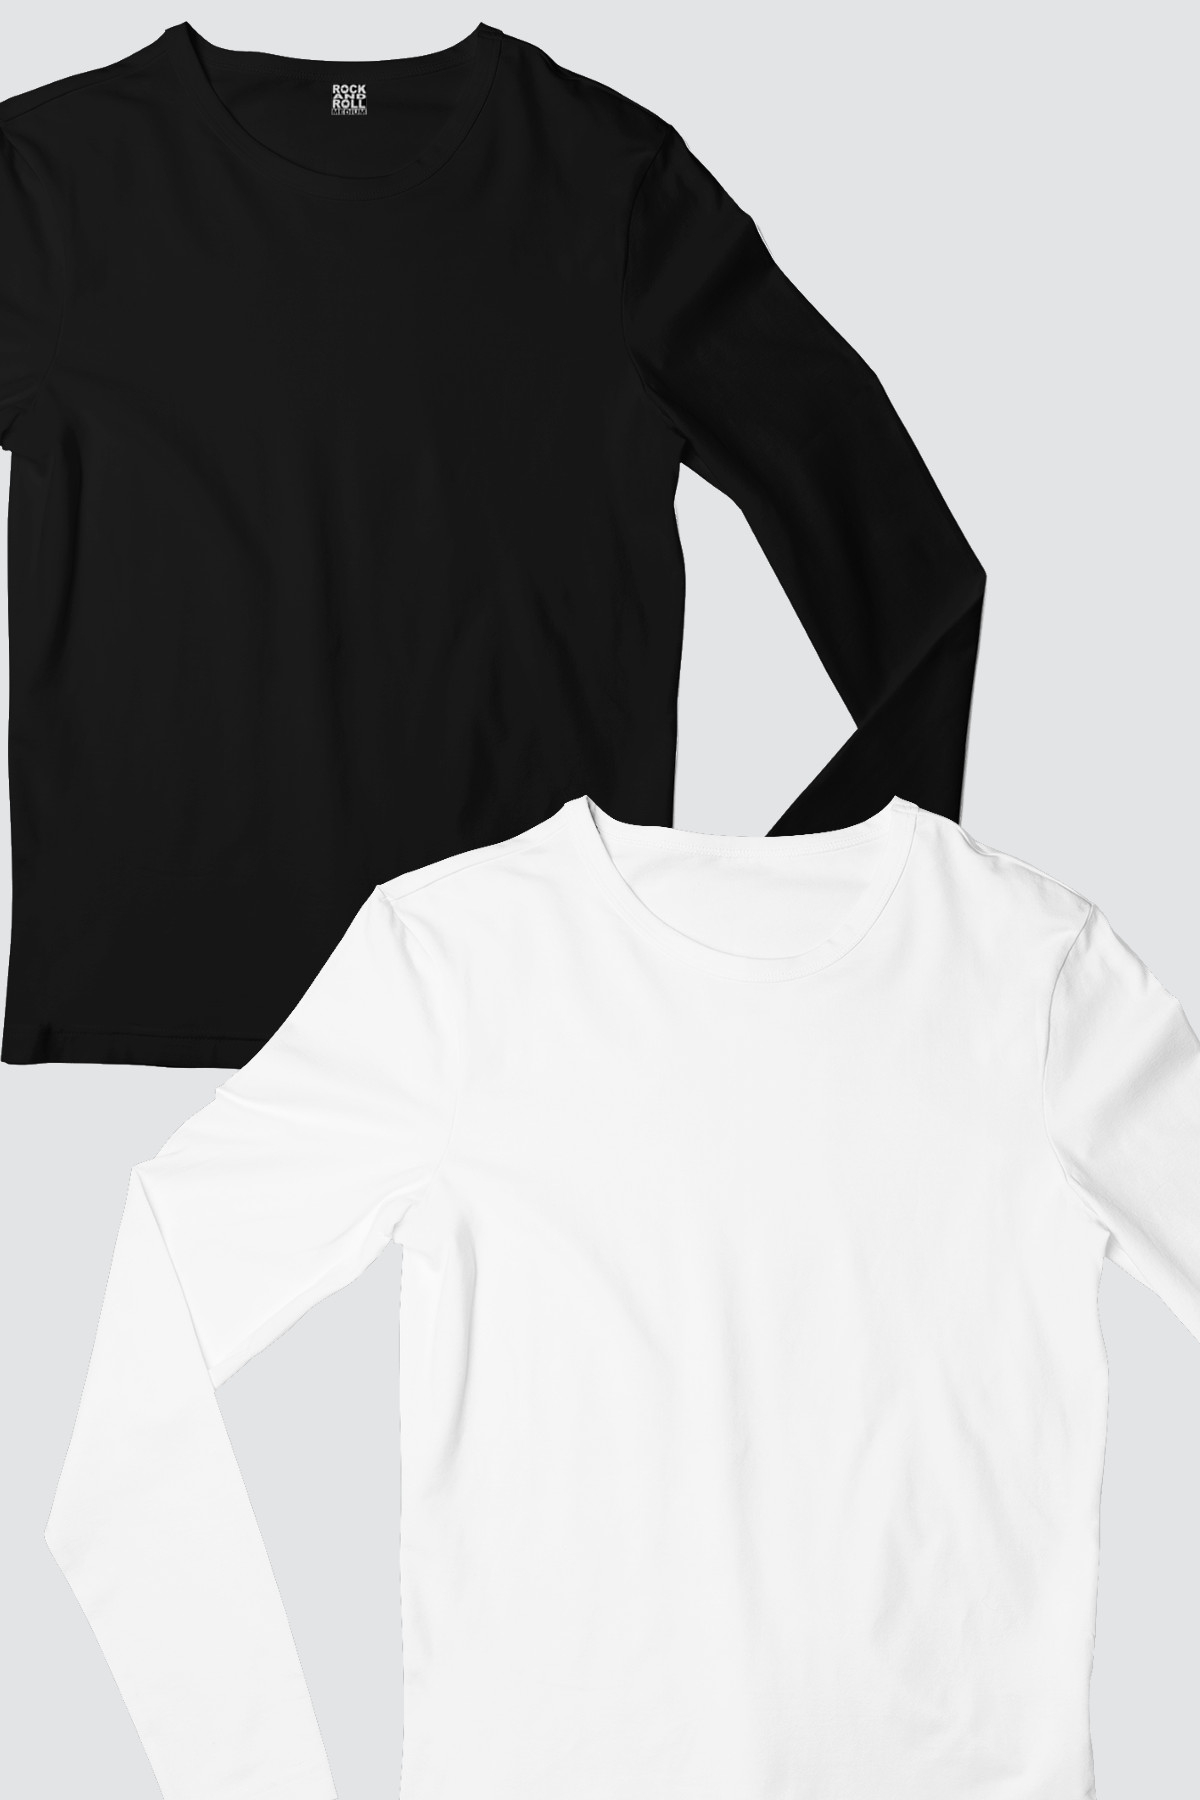 Düz, Baskısız 1 Siyah, 1 Beyaz, Uzun Kollu Kadın 2'li Eko Paket T-shirt